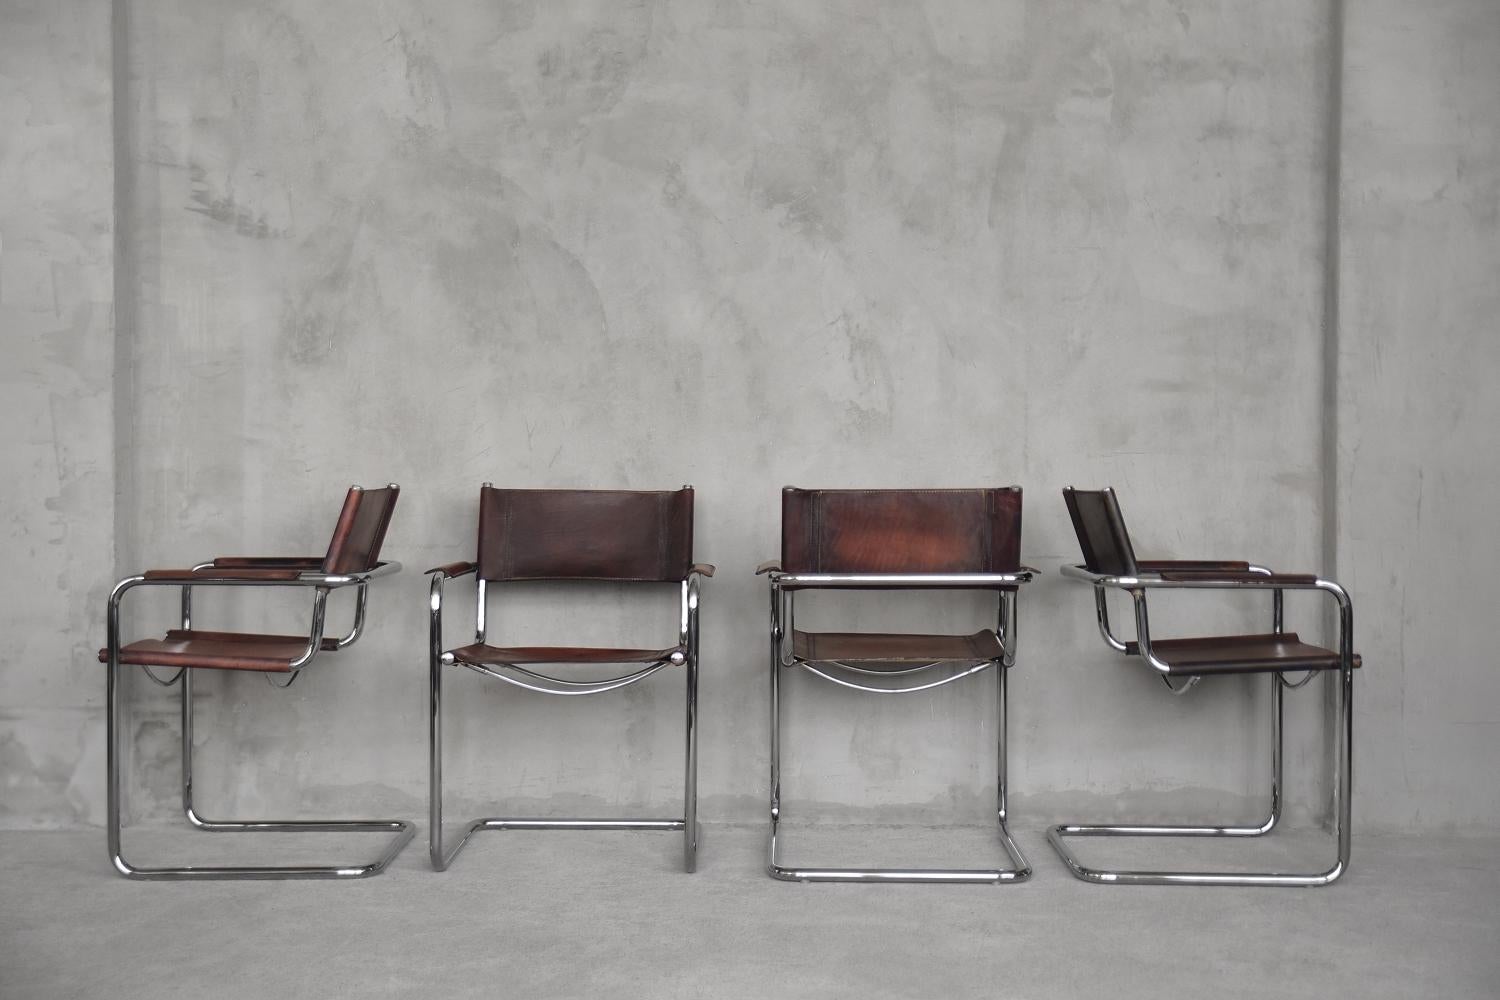 Ledermodell MG5 Freischwingende Beistellstühle von Centro Studi für Matteo Grassi, 1960 (Bauhaus)